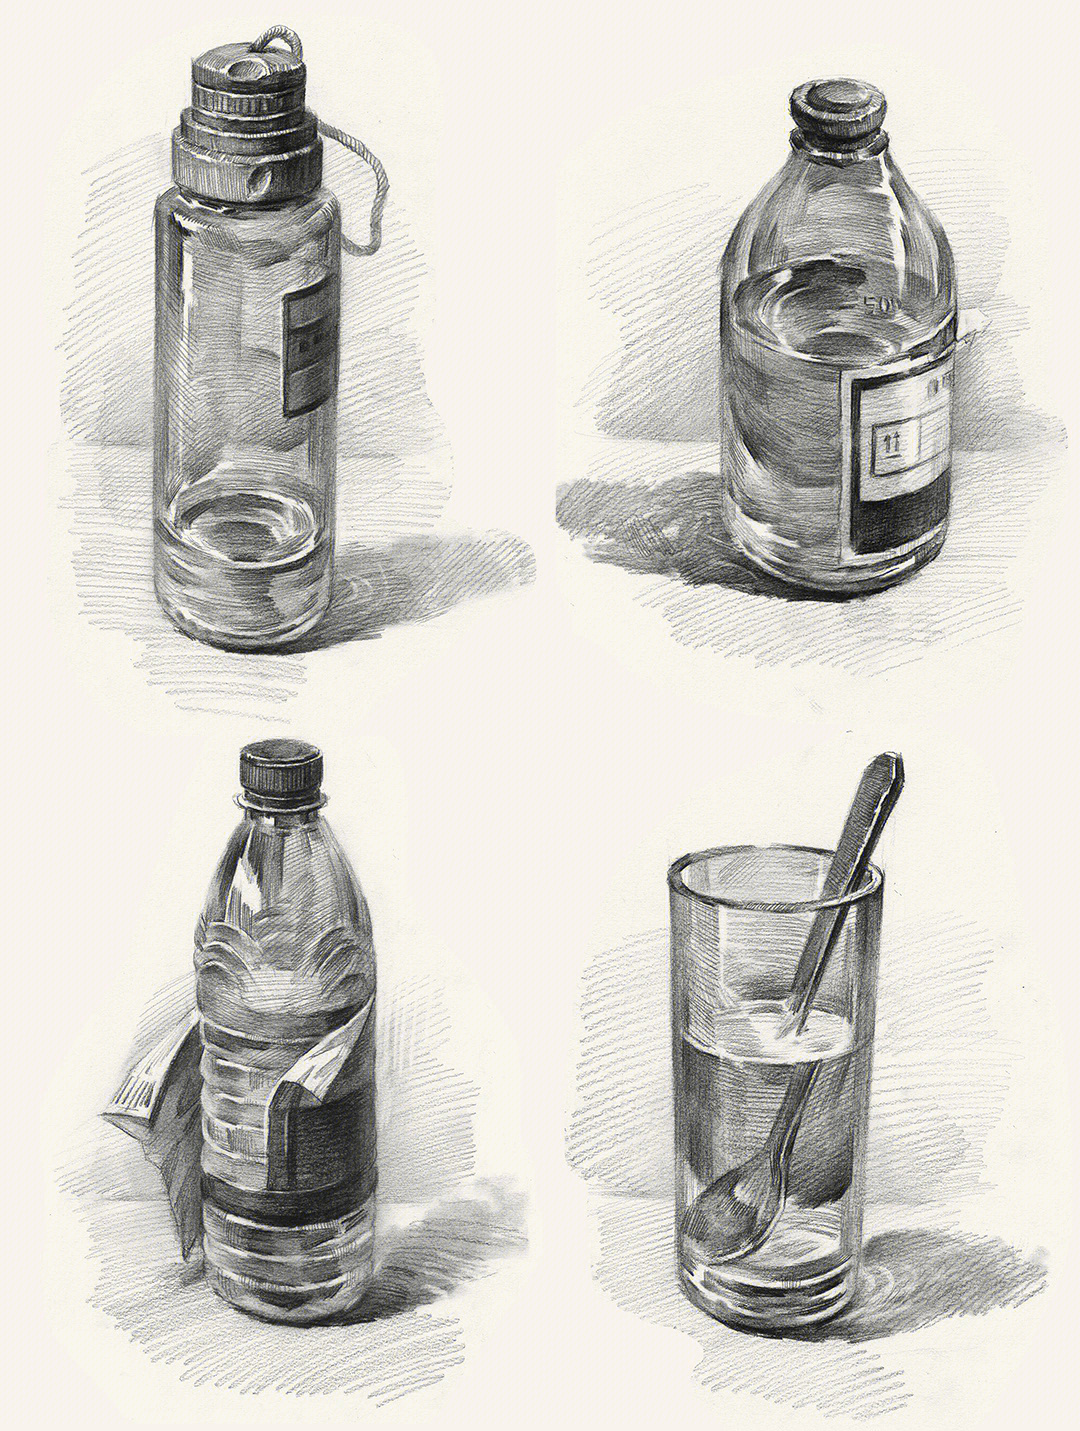 矿泉水瓶设计素描图片